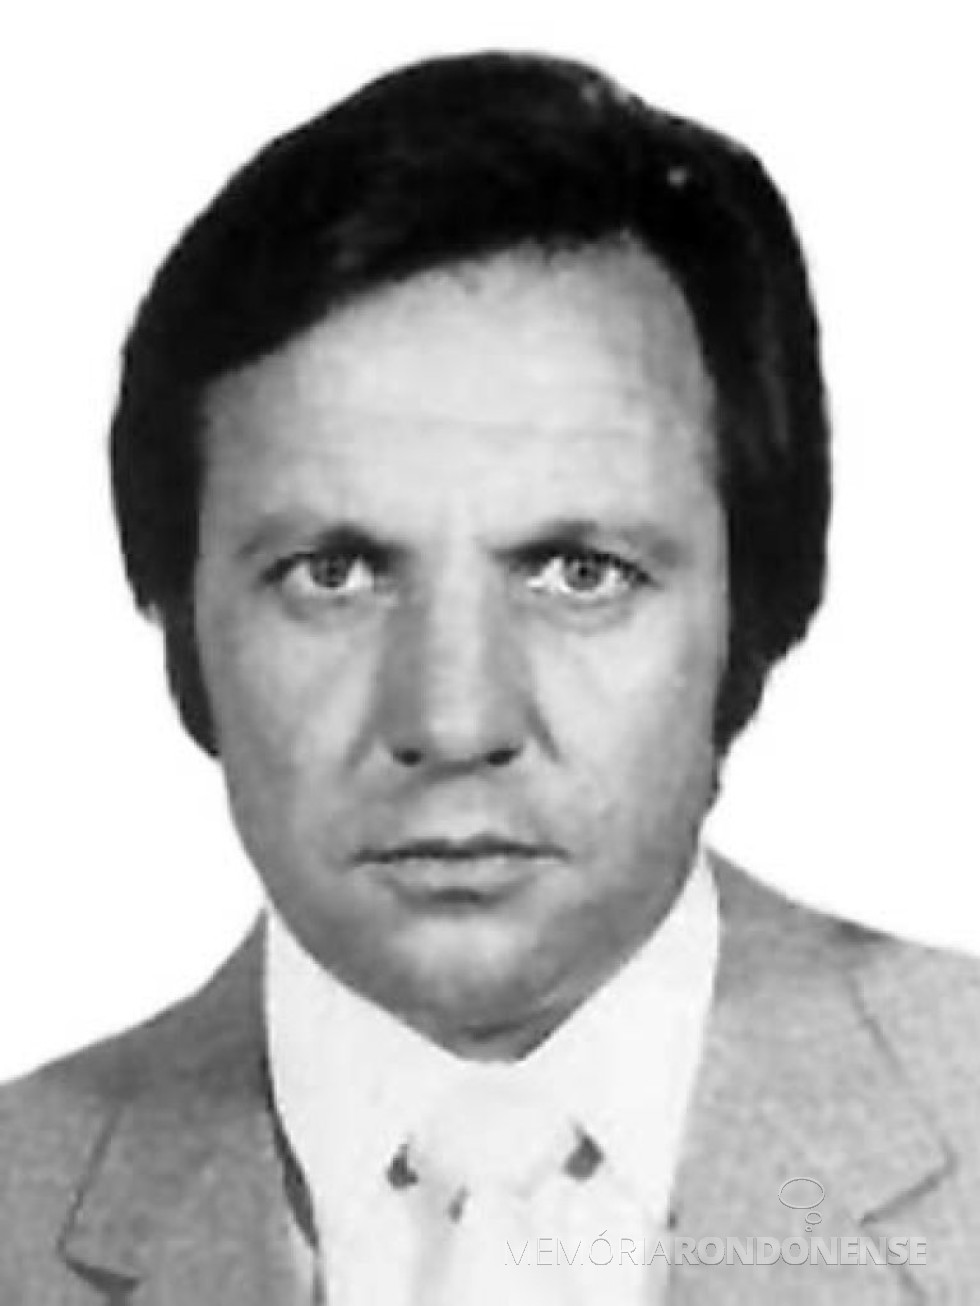 || Antonio Mazurek eleito deputado federal em 1978.
Imagem: Acervo Câmara dos Deputados - FOTO  18 - 